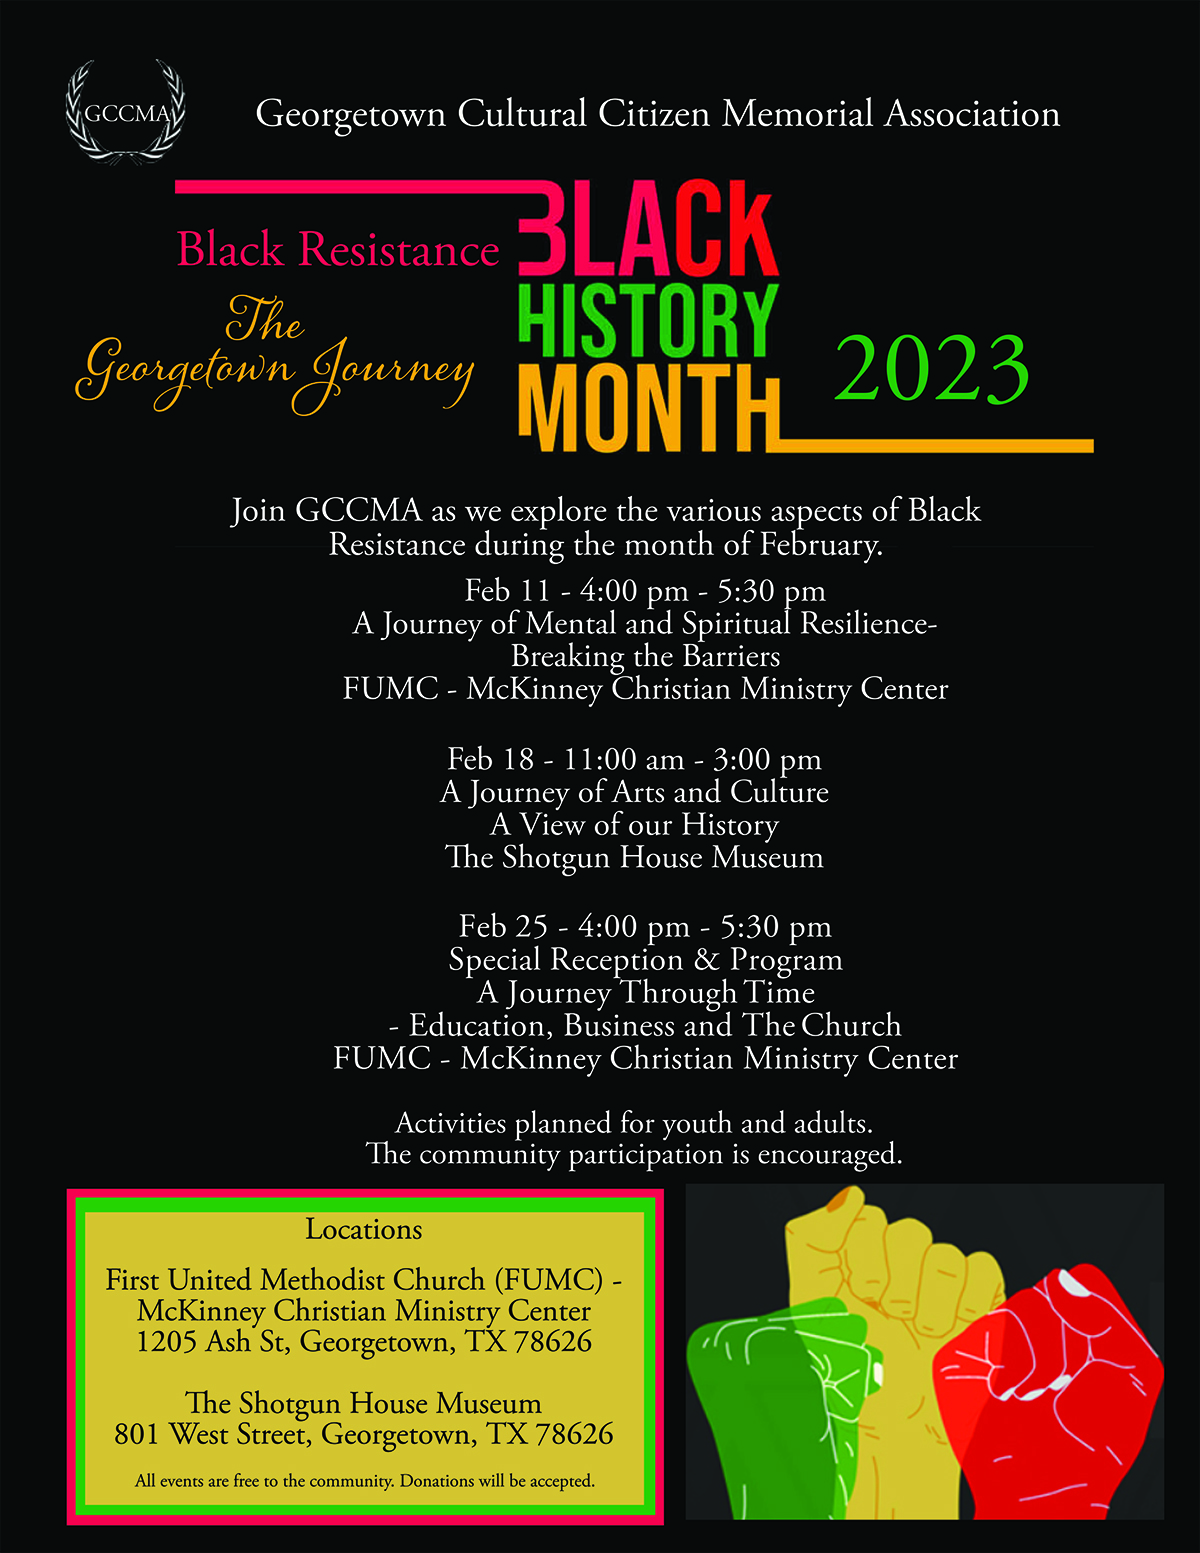 Los eventos de la Asociación Conmemorativa de Ciudadanos Culturales de Georgetown incluyen un panel de discusión el 11 de febrero, recorridos por Shotgun House el 18 de febrero y una recepción de historia negra el 25 de febrero